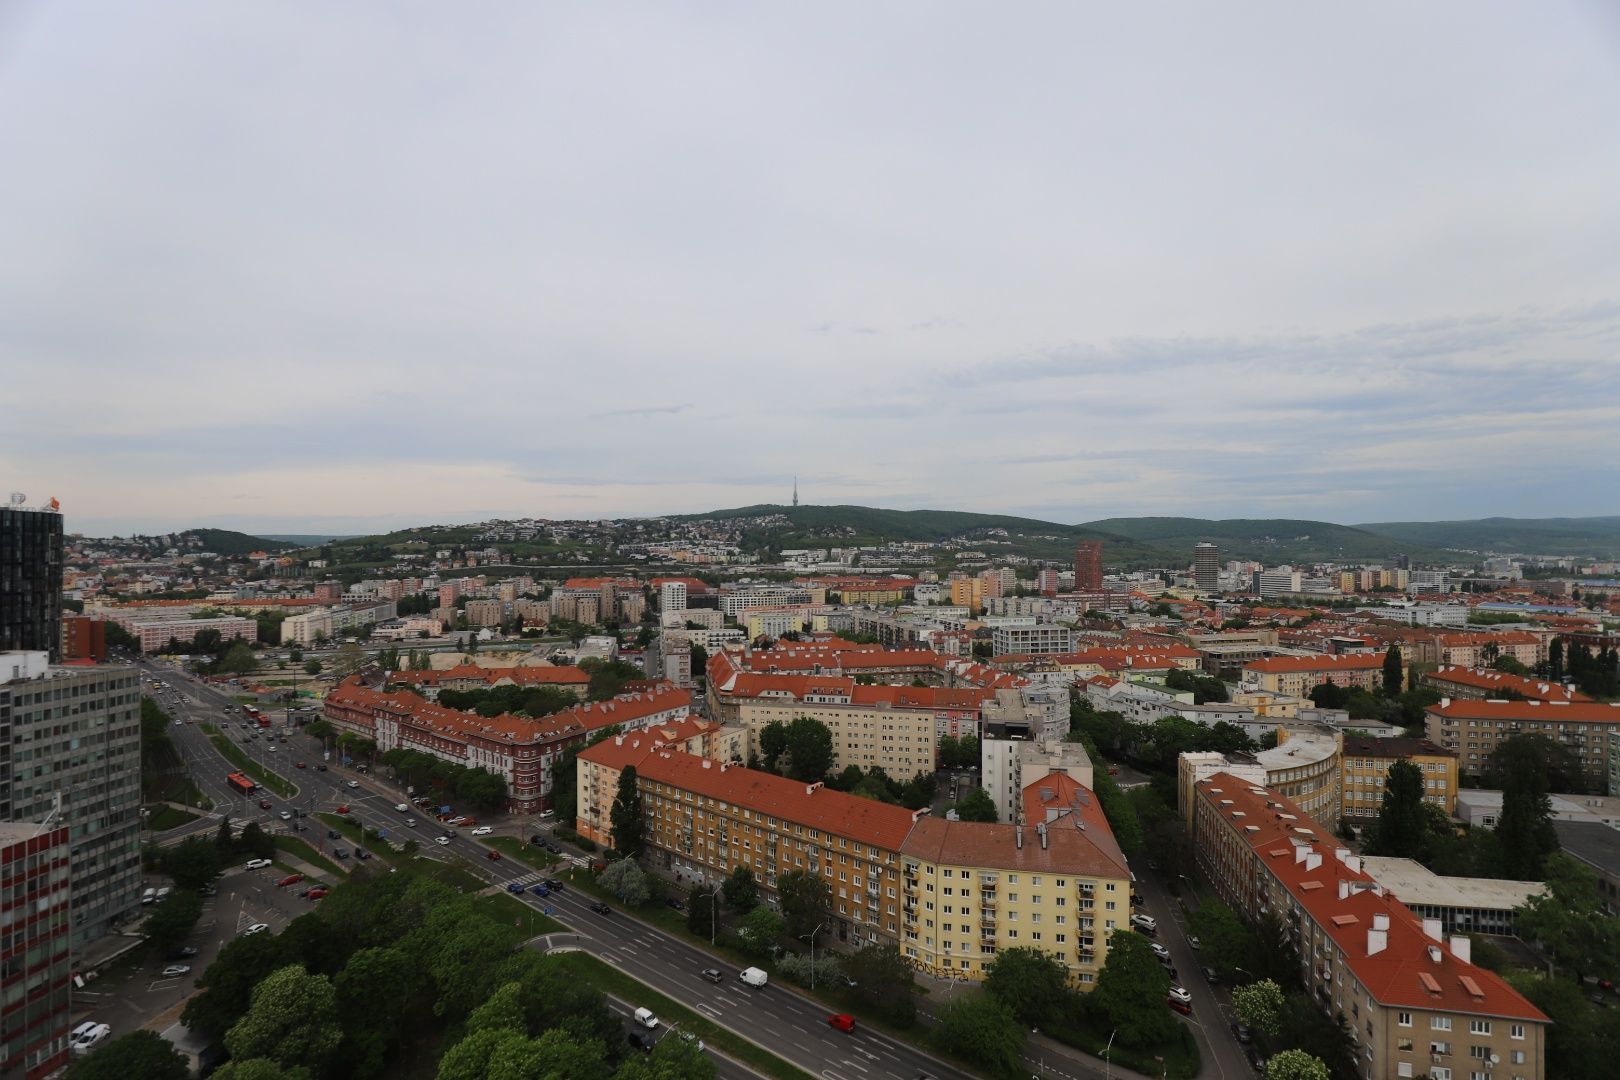 Na prenájom priestranný 2-izbový byt s panoramatickým výhľadom v novostavbe Danubius One na ulici Trnavská cesta v Bratislave- Ružinov.